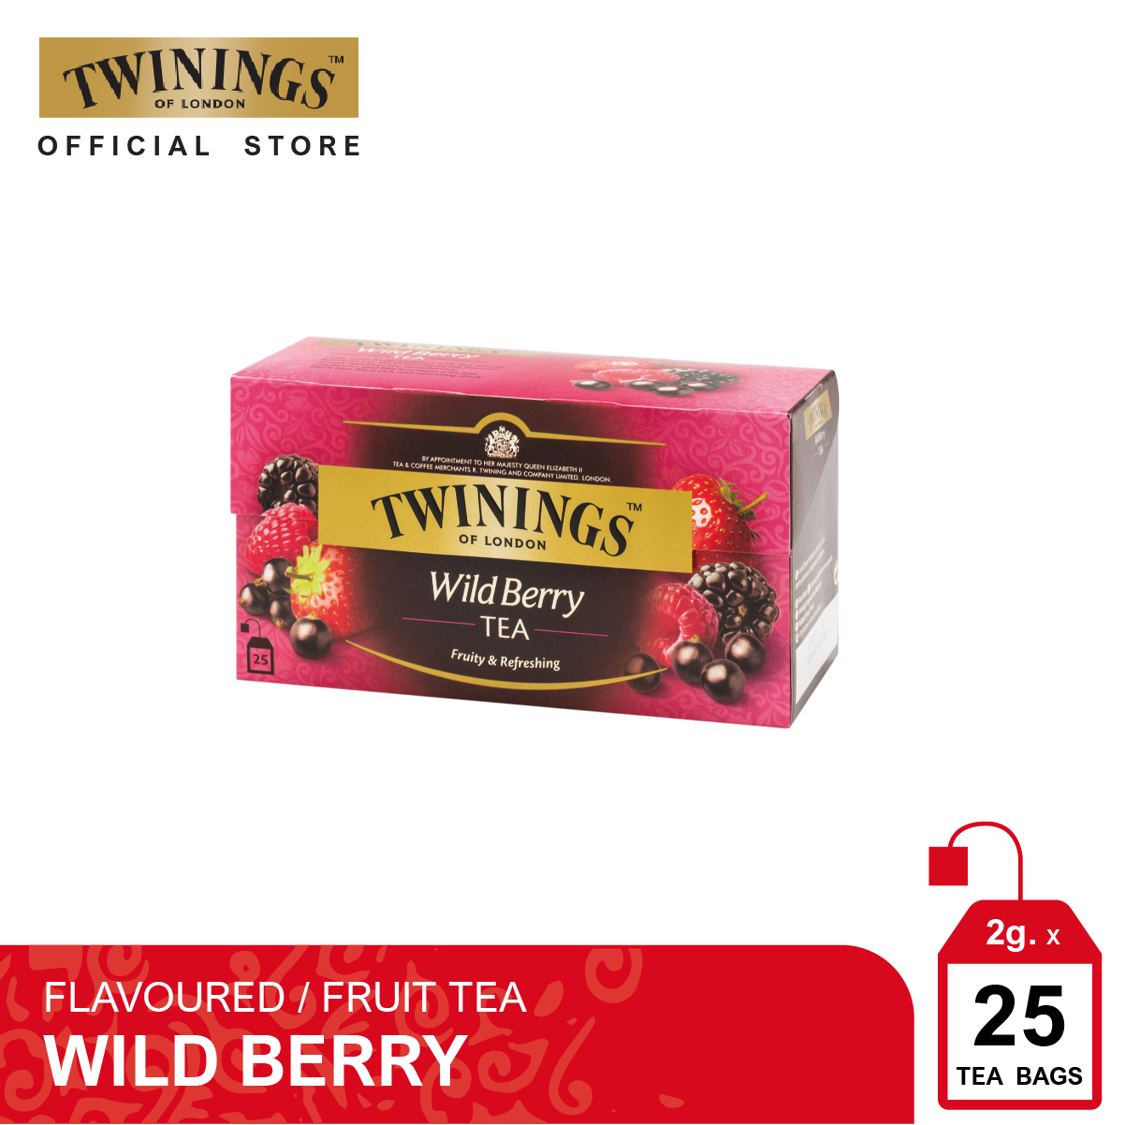 ทไวนิงส์ ชาแต่งกลิ่น ไวลด์ เบอร์รี่ ชนิดซอง 2 กรัม แพ็ค 25 ซอง Twinings Wild Berry Flavoured Tea 2 g. Pack 25 Tea Bags